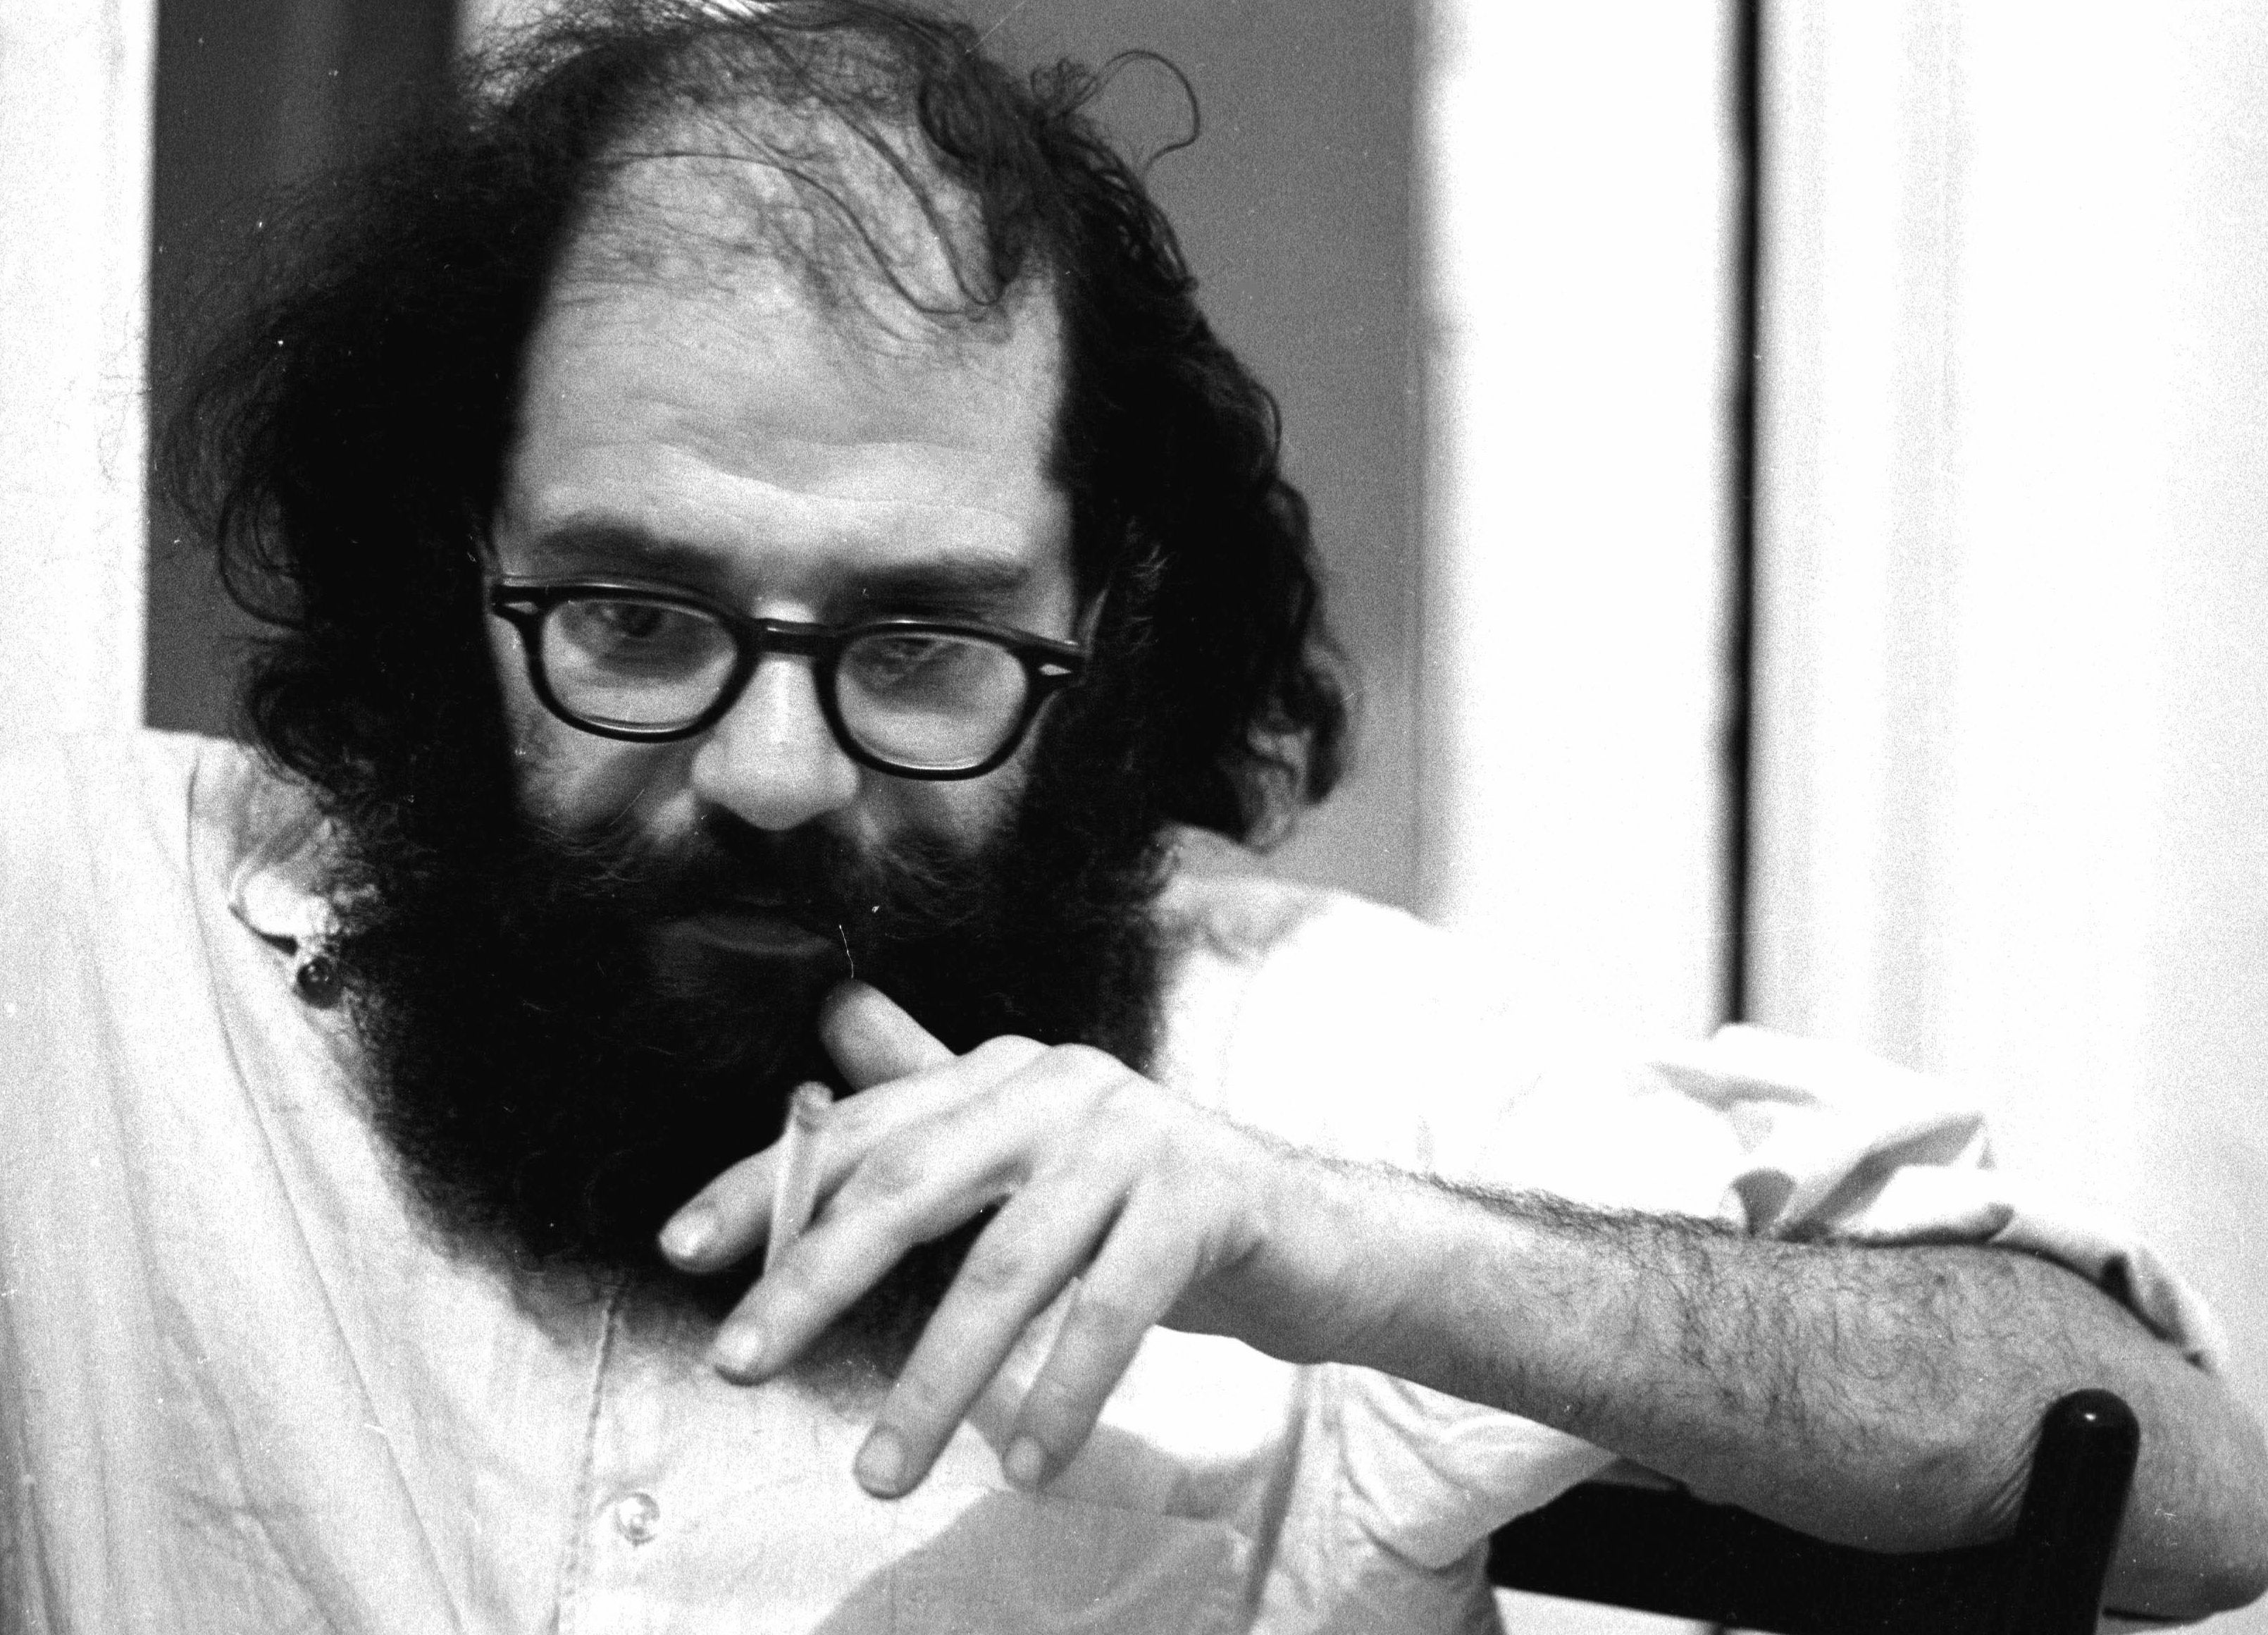 Allen Ginsberg in 1966